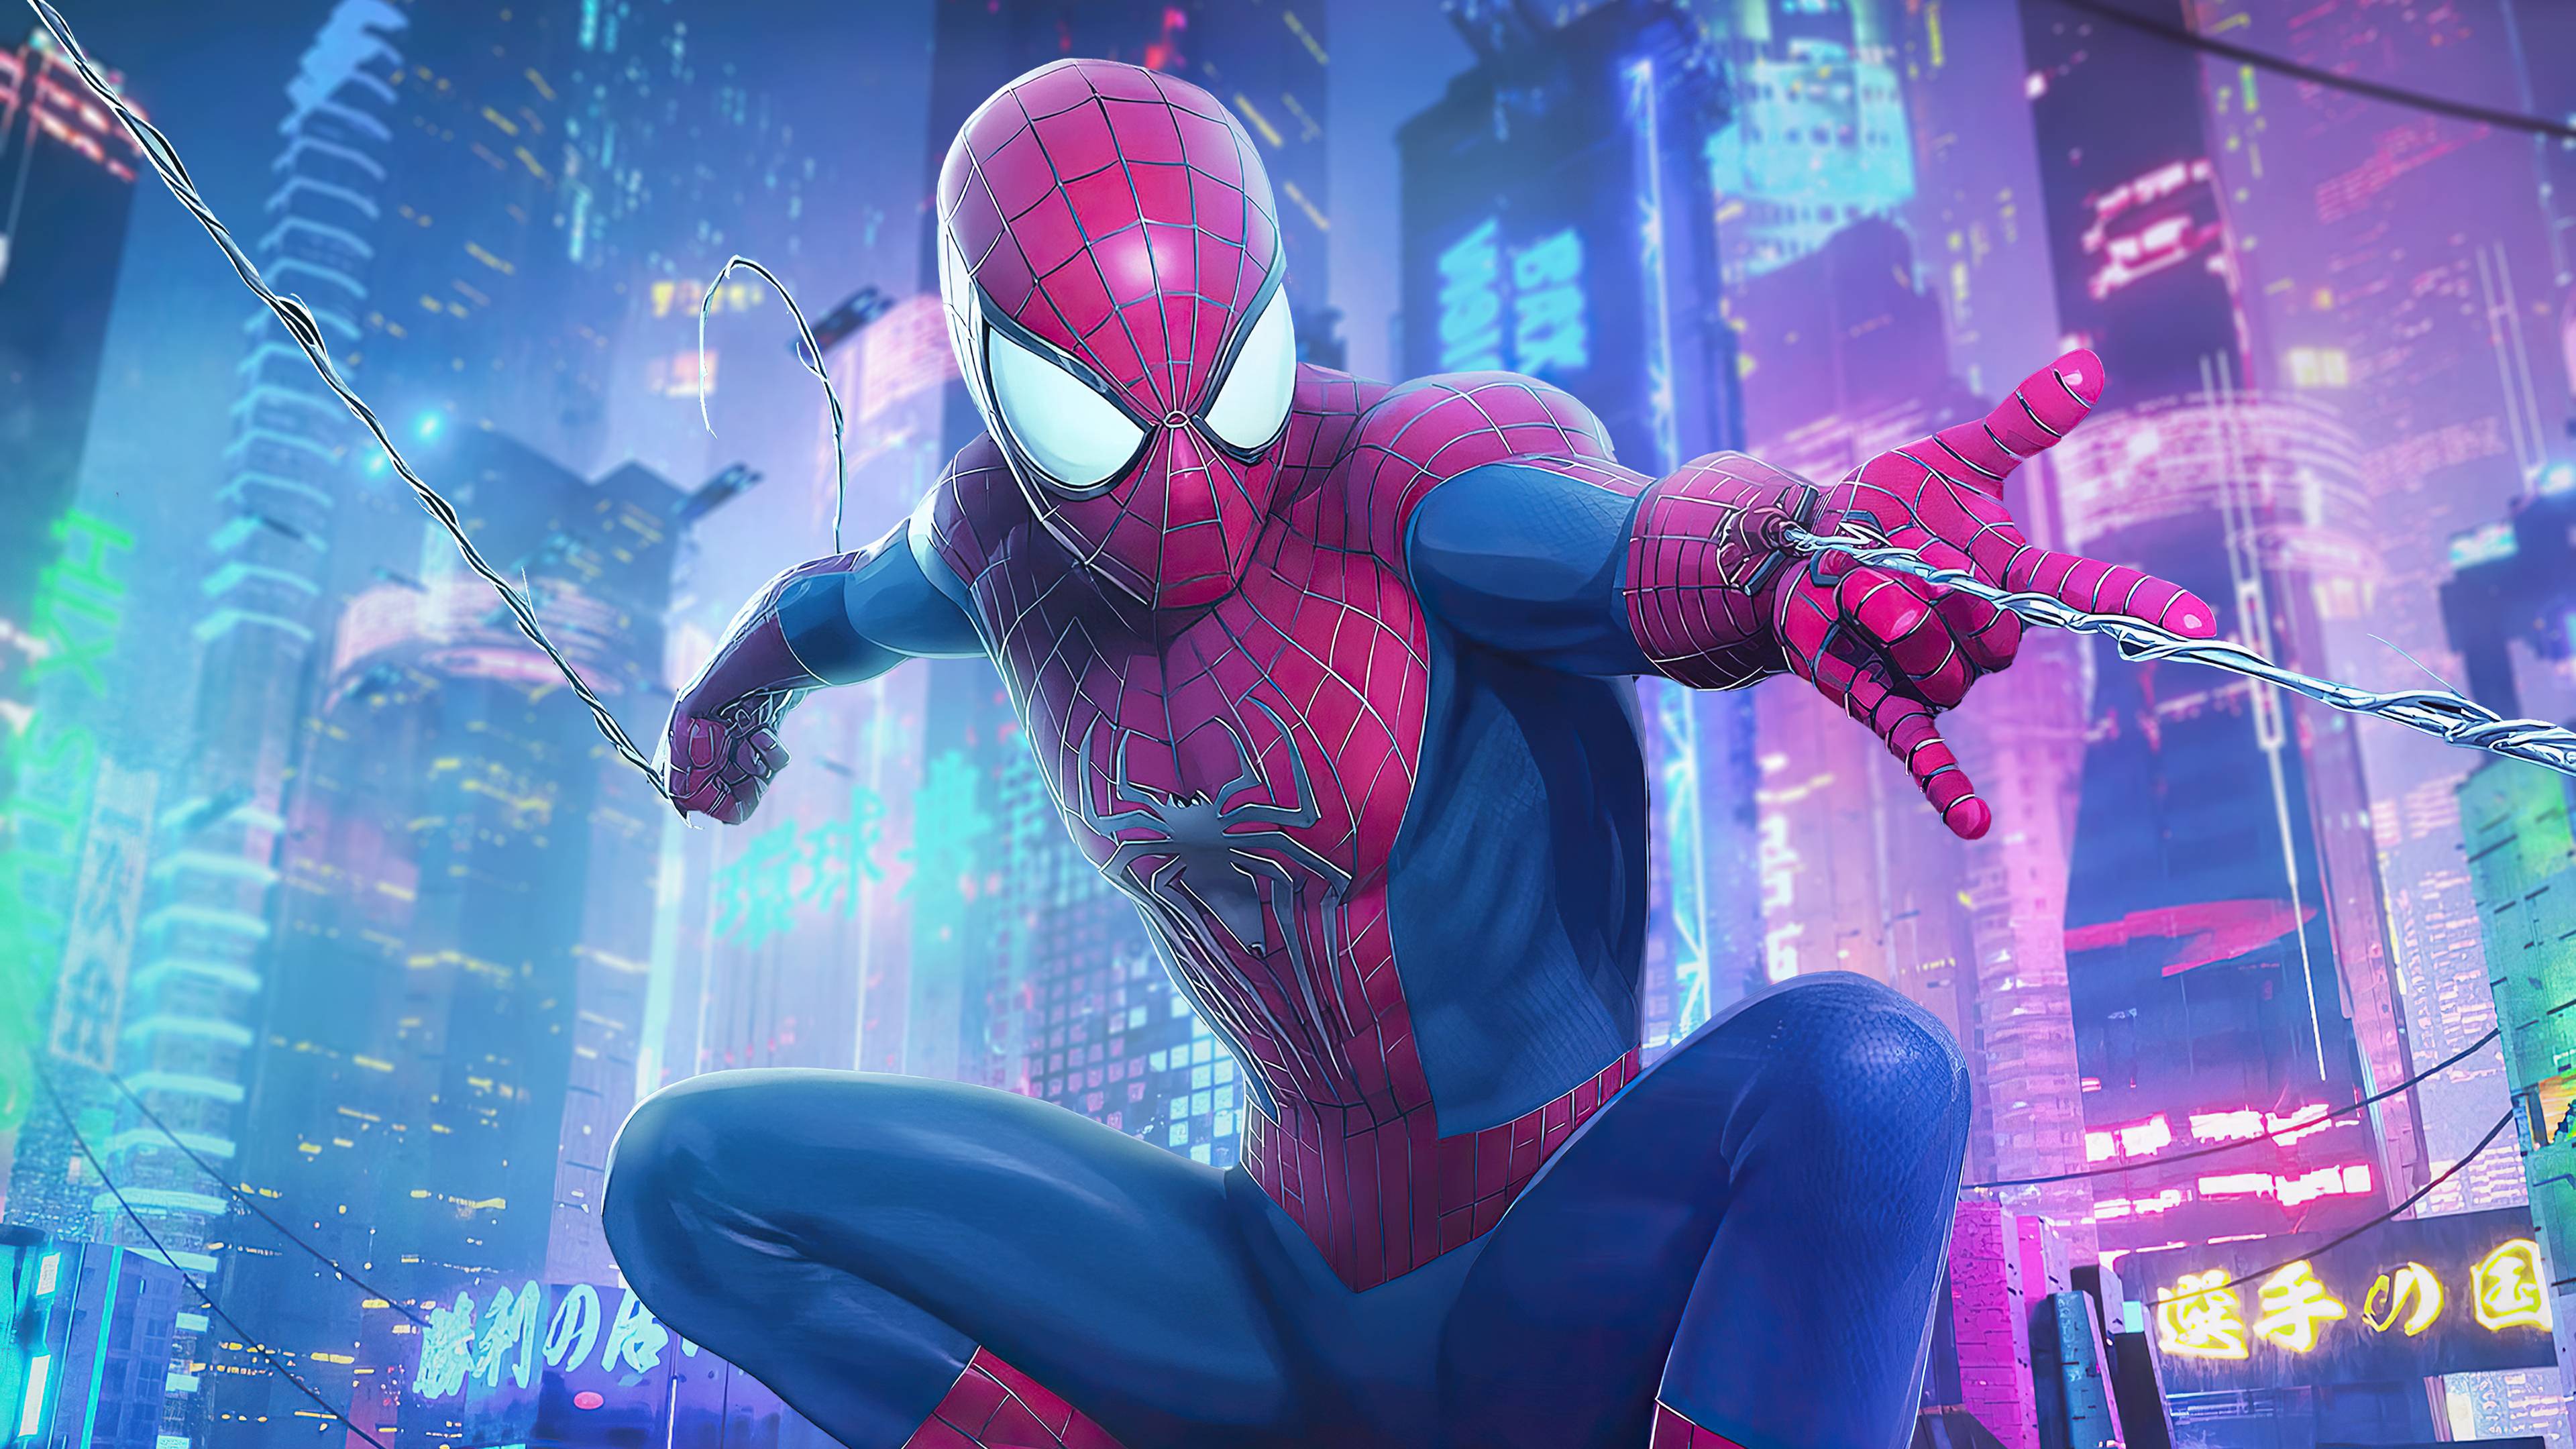 Amazing Spiderman Desktop Wallpapers - Top Free Amazing Spiderman ...